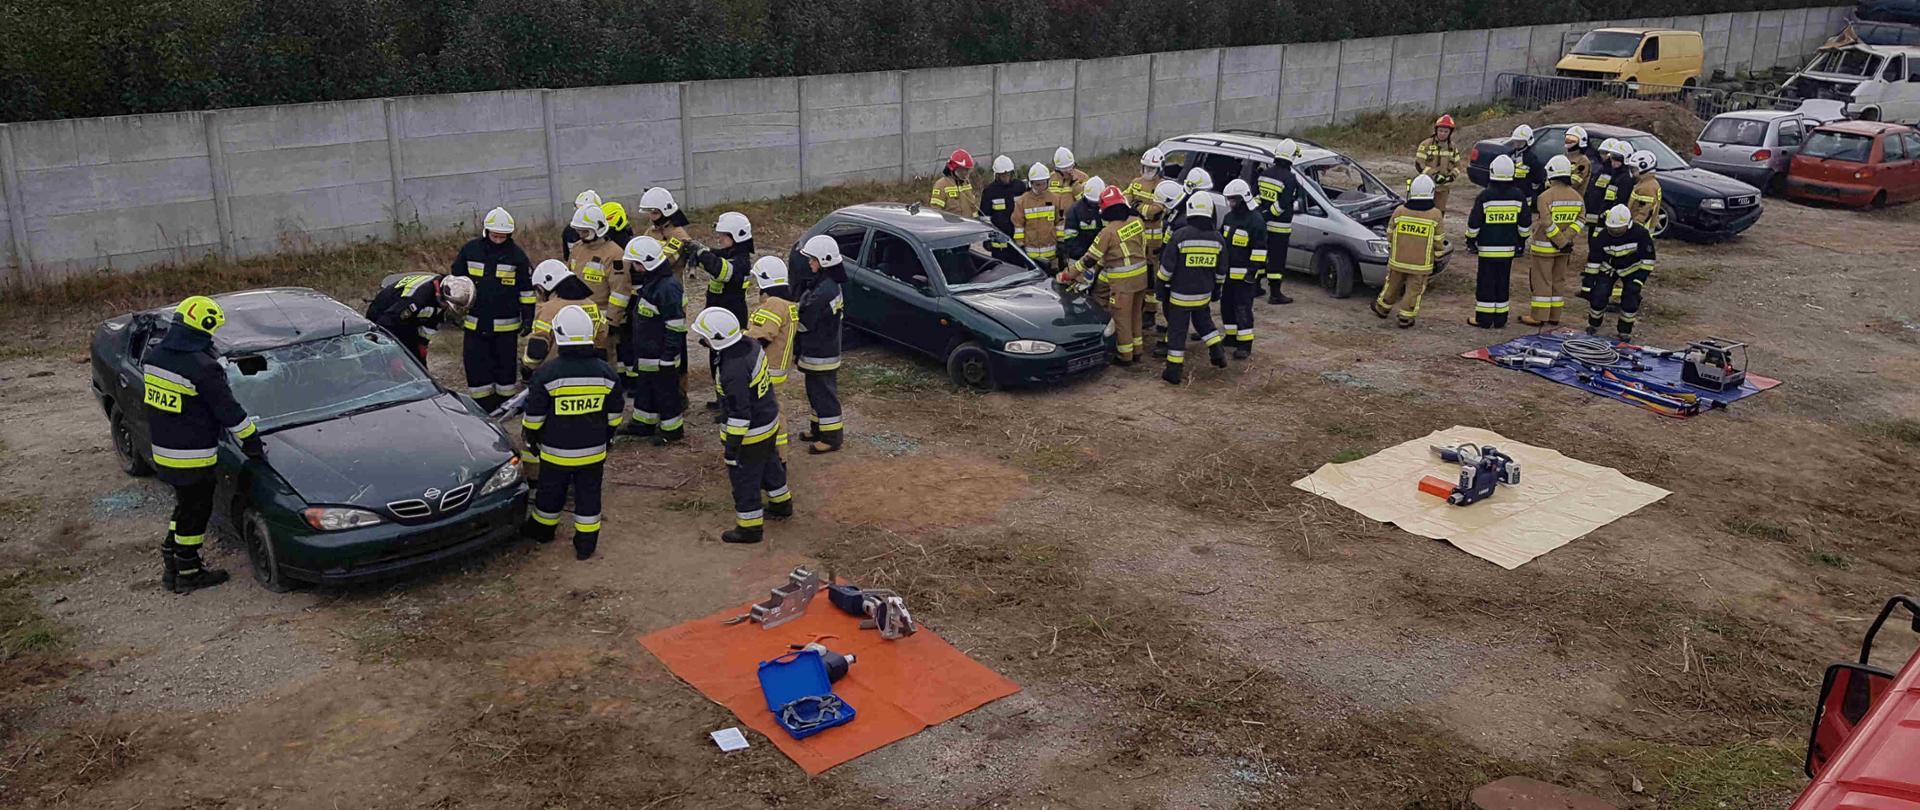 Zdjęcie zrobione w dzień na auto złomie. Na zdjęciu widać cztery grupy strażaków podczas pracy narzędziami hydraulicznymi. Strażacy tną samochody osobowe. 